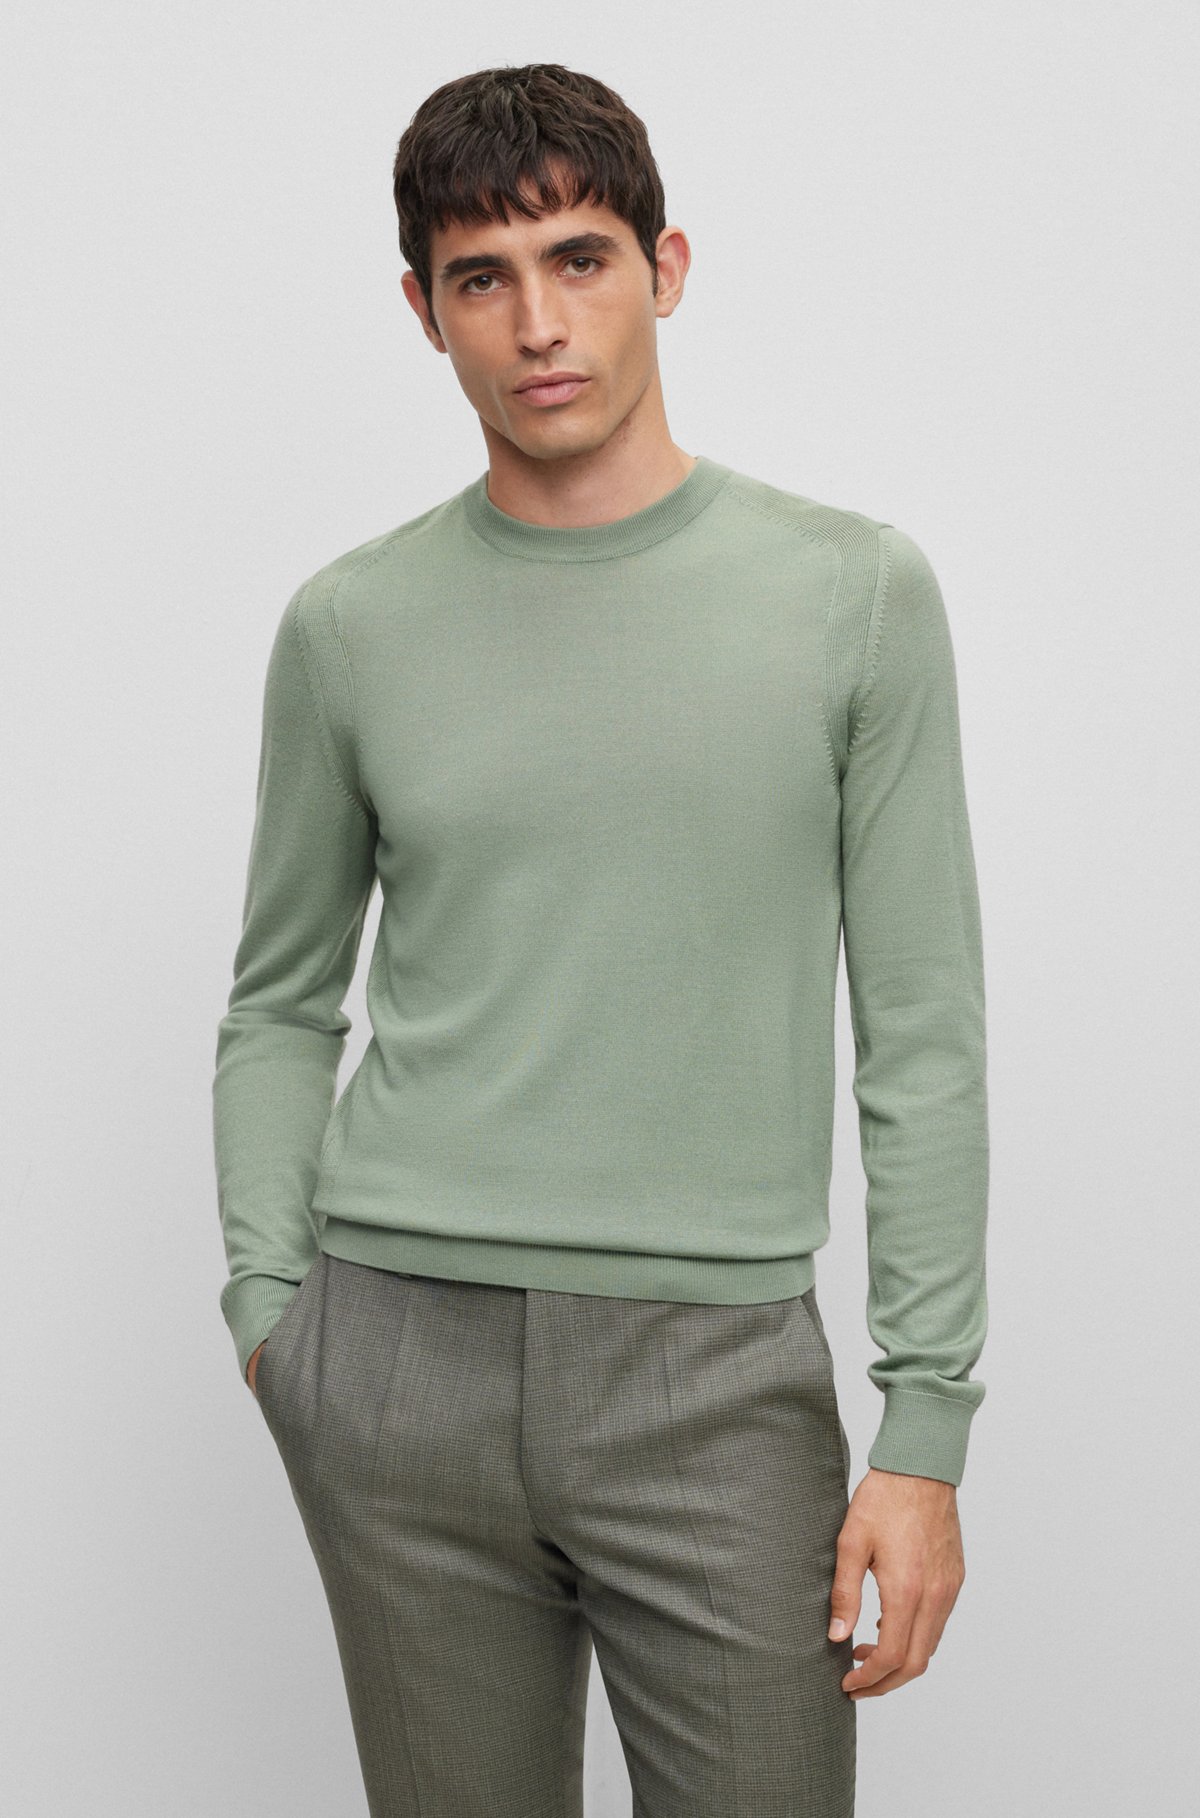 Regular-Fit Pullover aus Wolle, Seide und Kaschmir, Grün